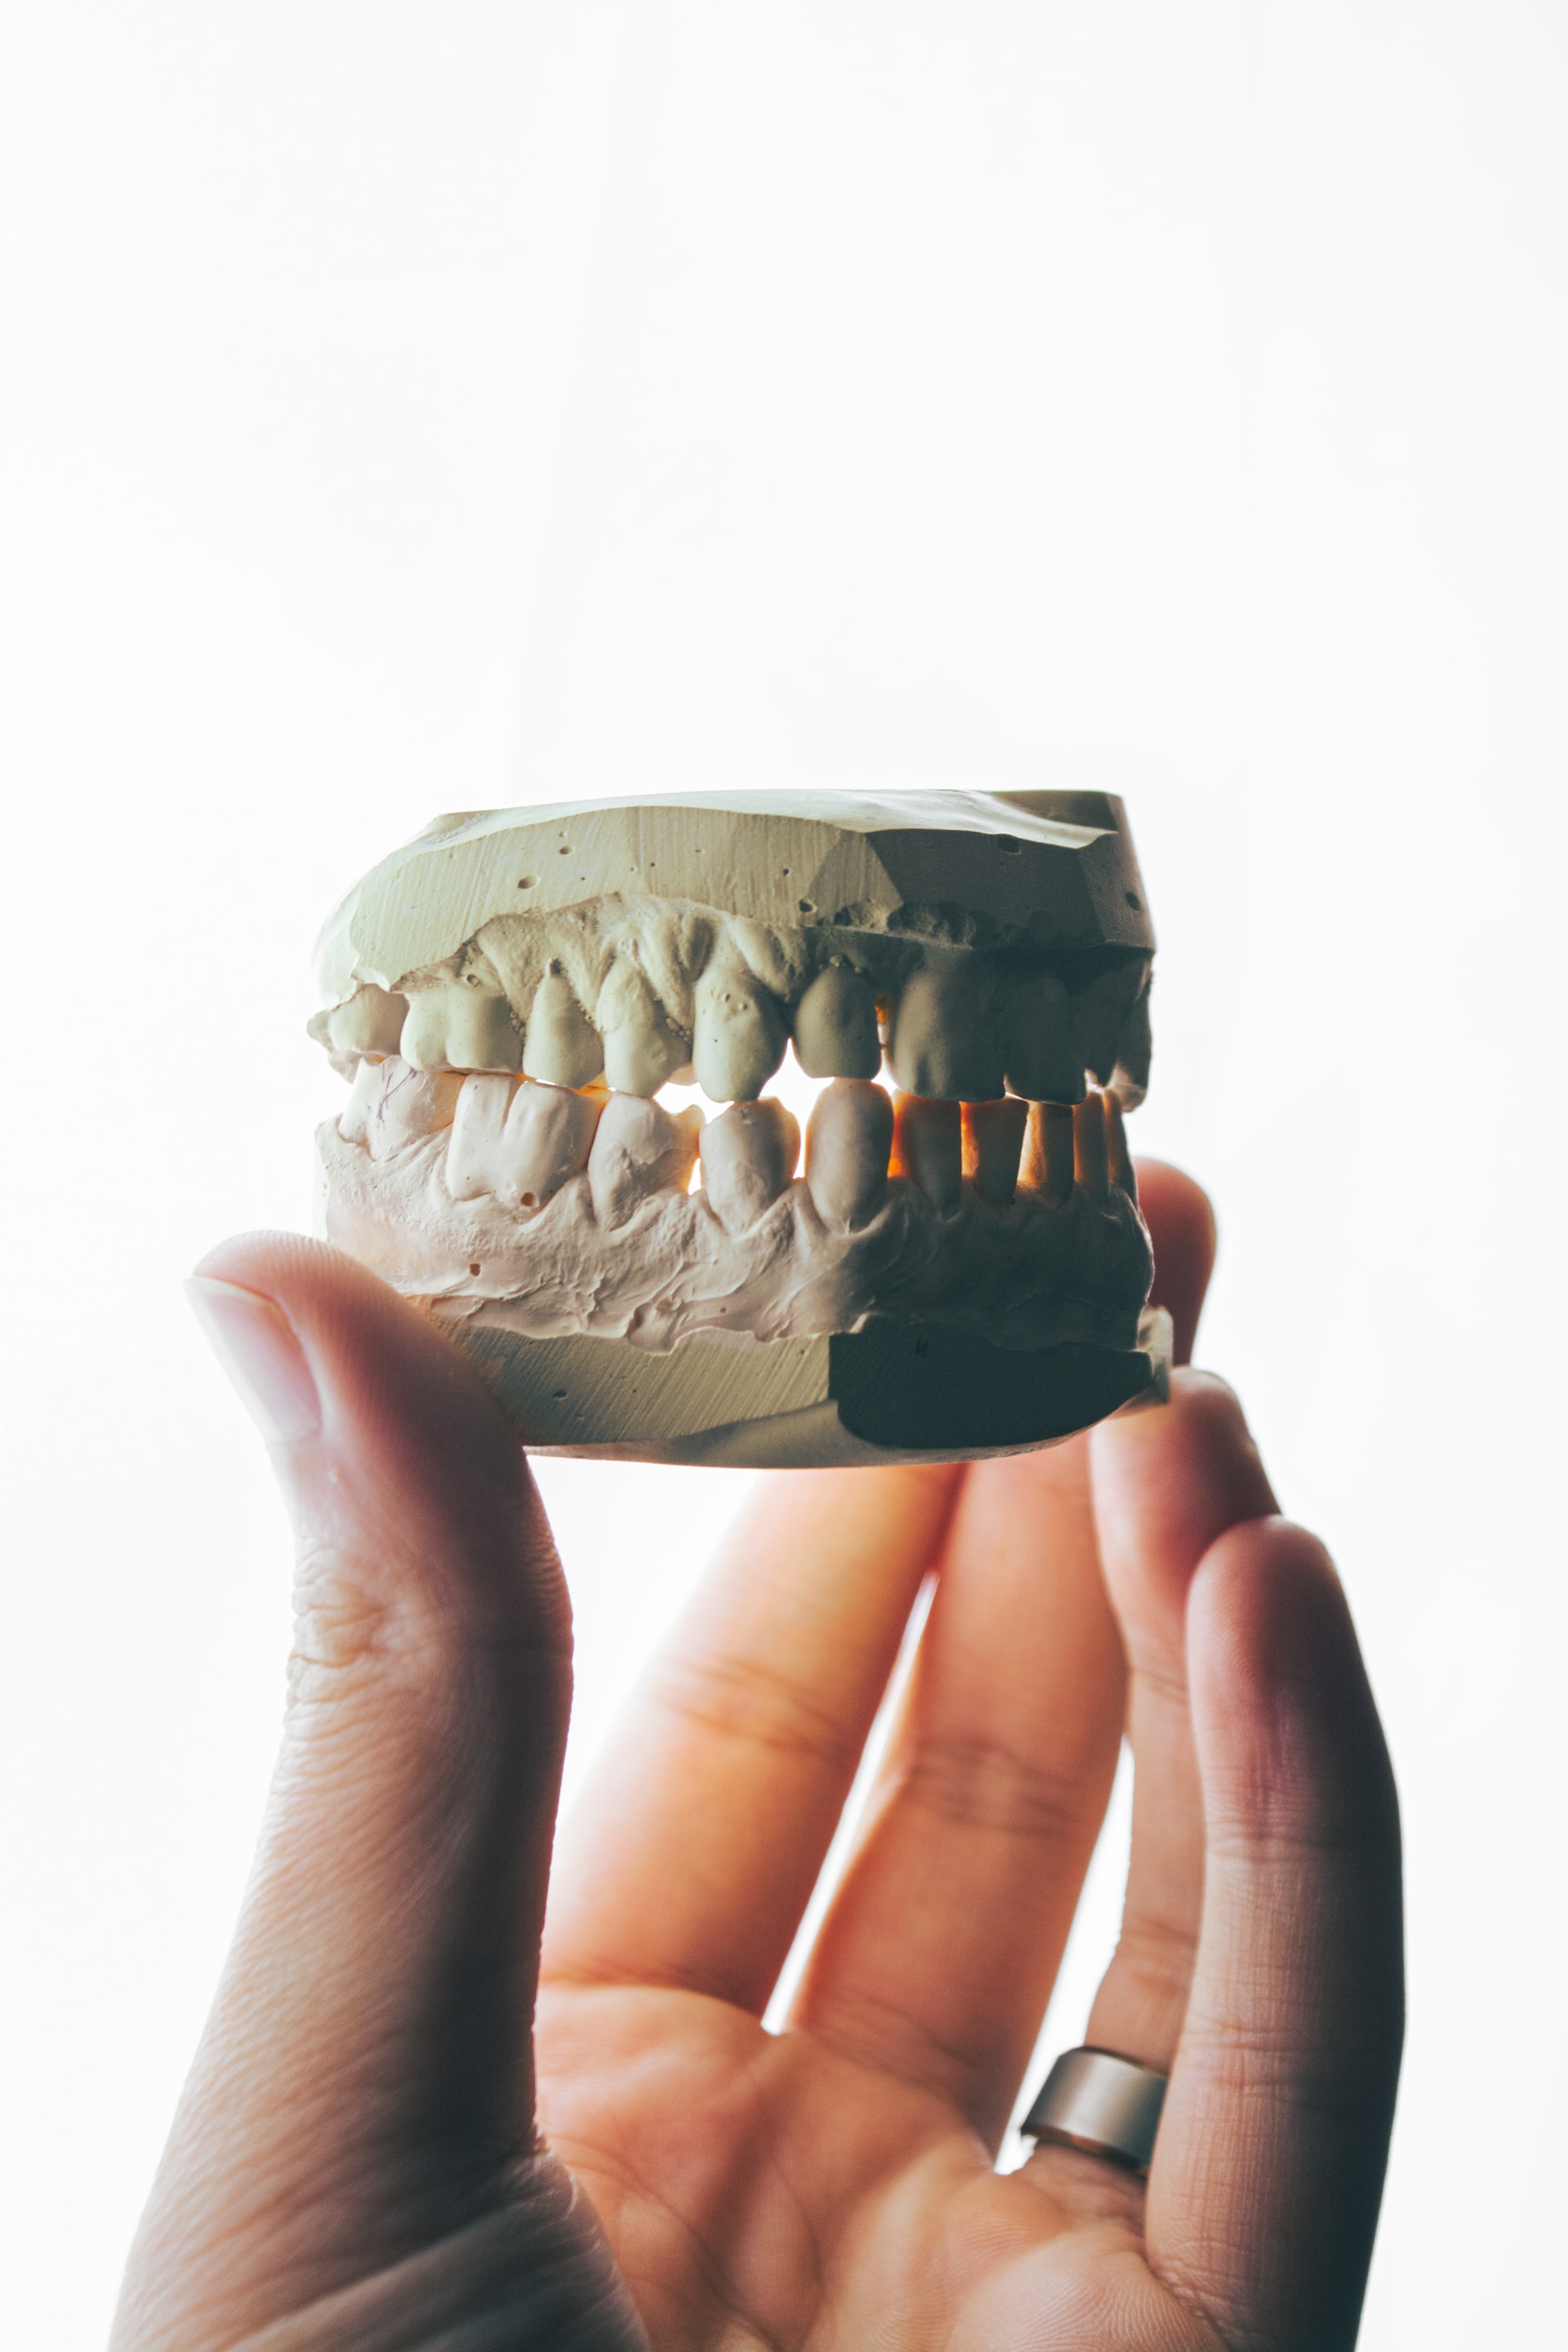 Τα στραβά δόντια υπήρχαν από την εποχή του Νεάντερταλ.